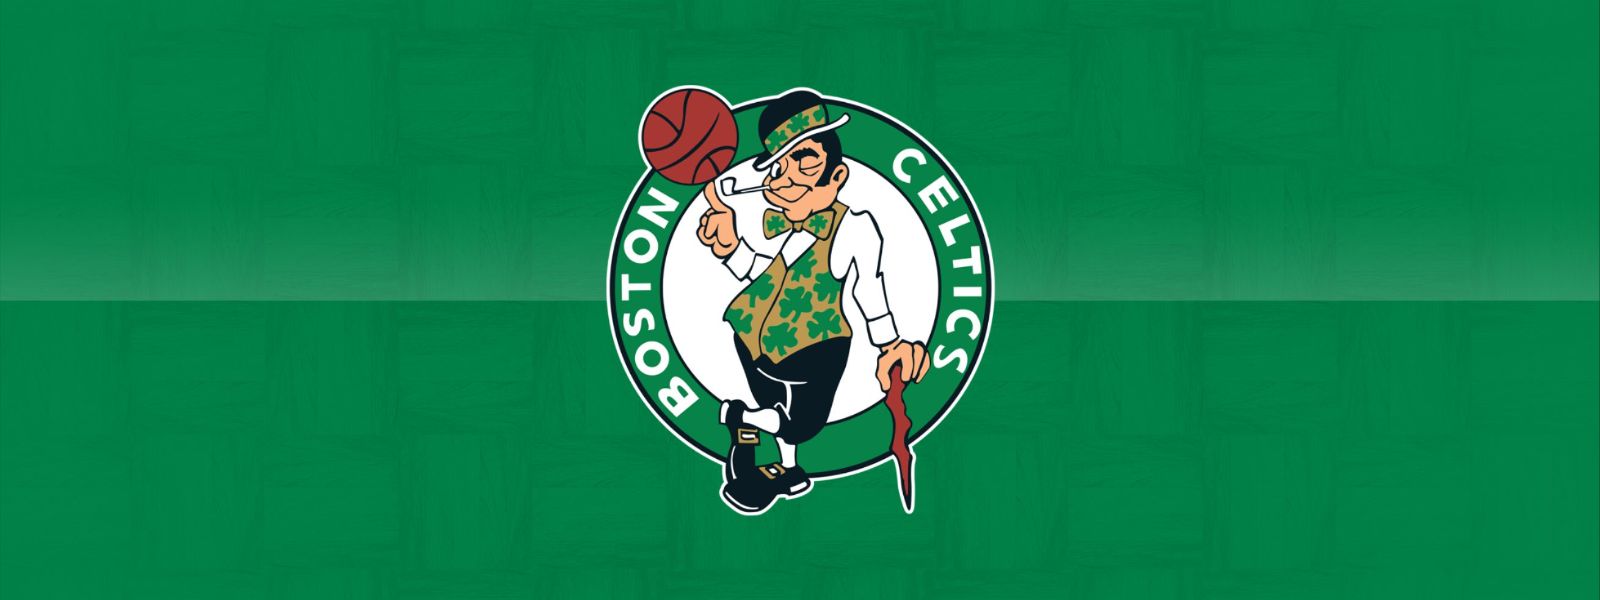 Celtics vs. Clippers